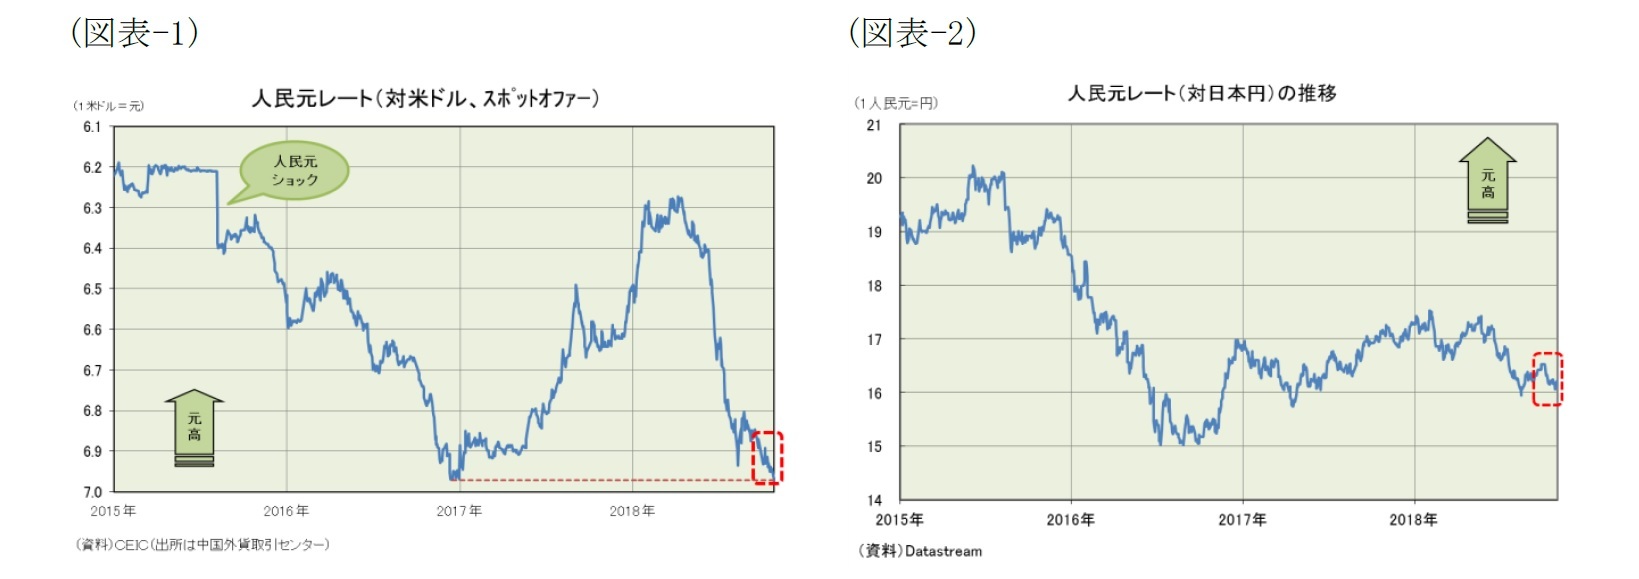 (図表-1)人民元レート（対米ドル、スポットオファー）/(図表-2)人民元レート（対日本円）の推移